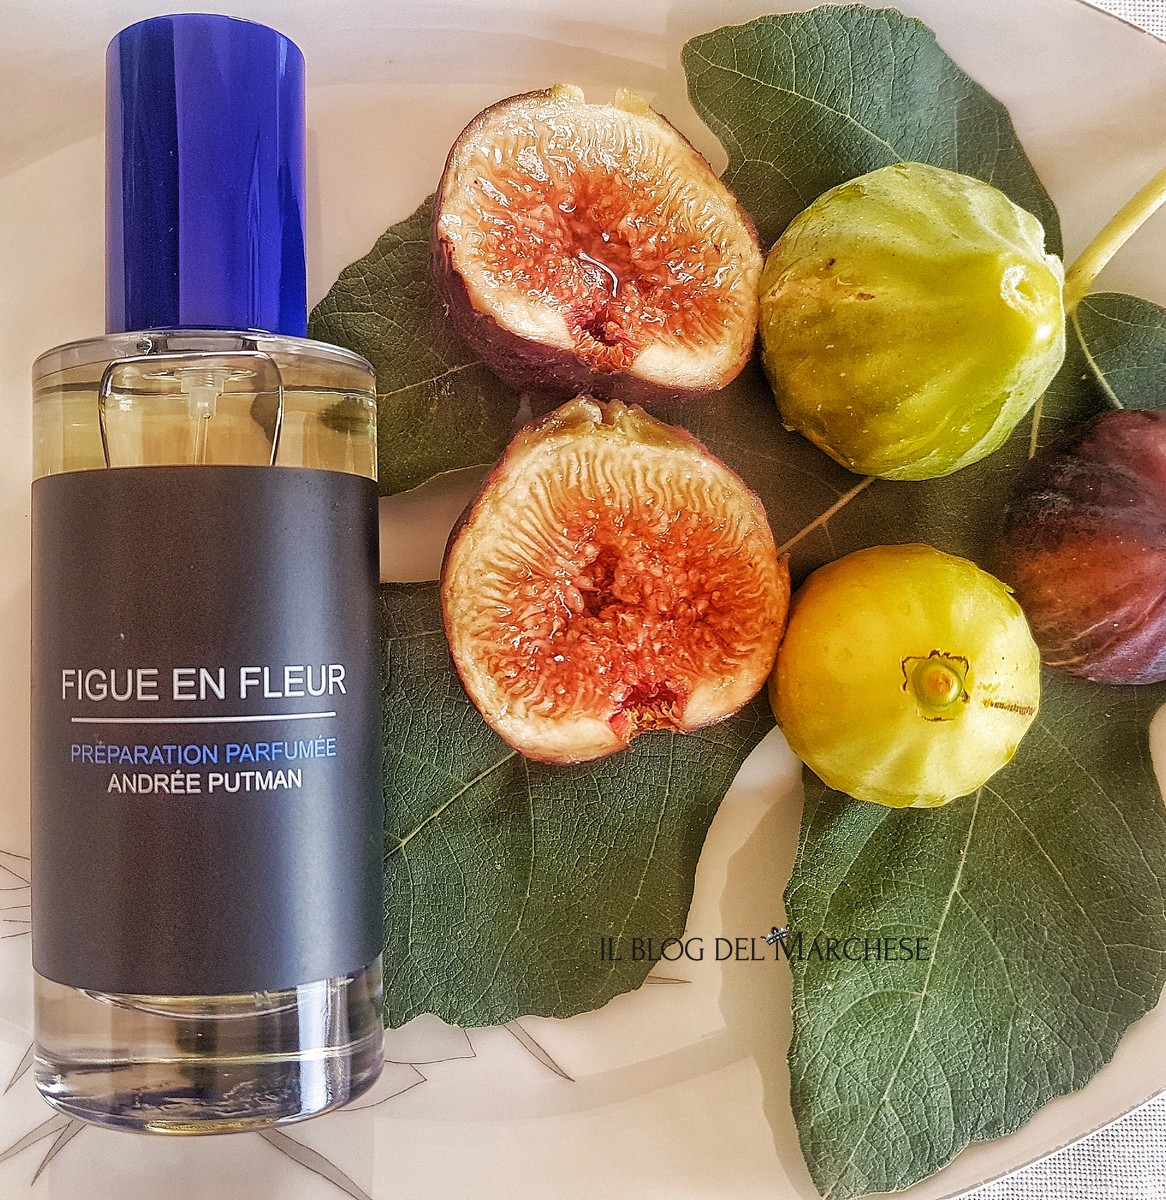 “Figue en fleur” by Andreè Putman: fig perfume